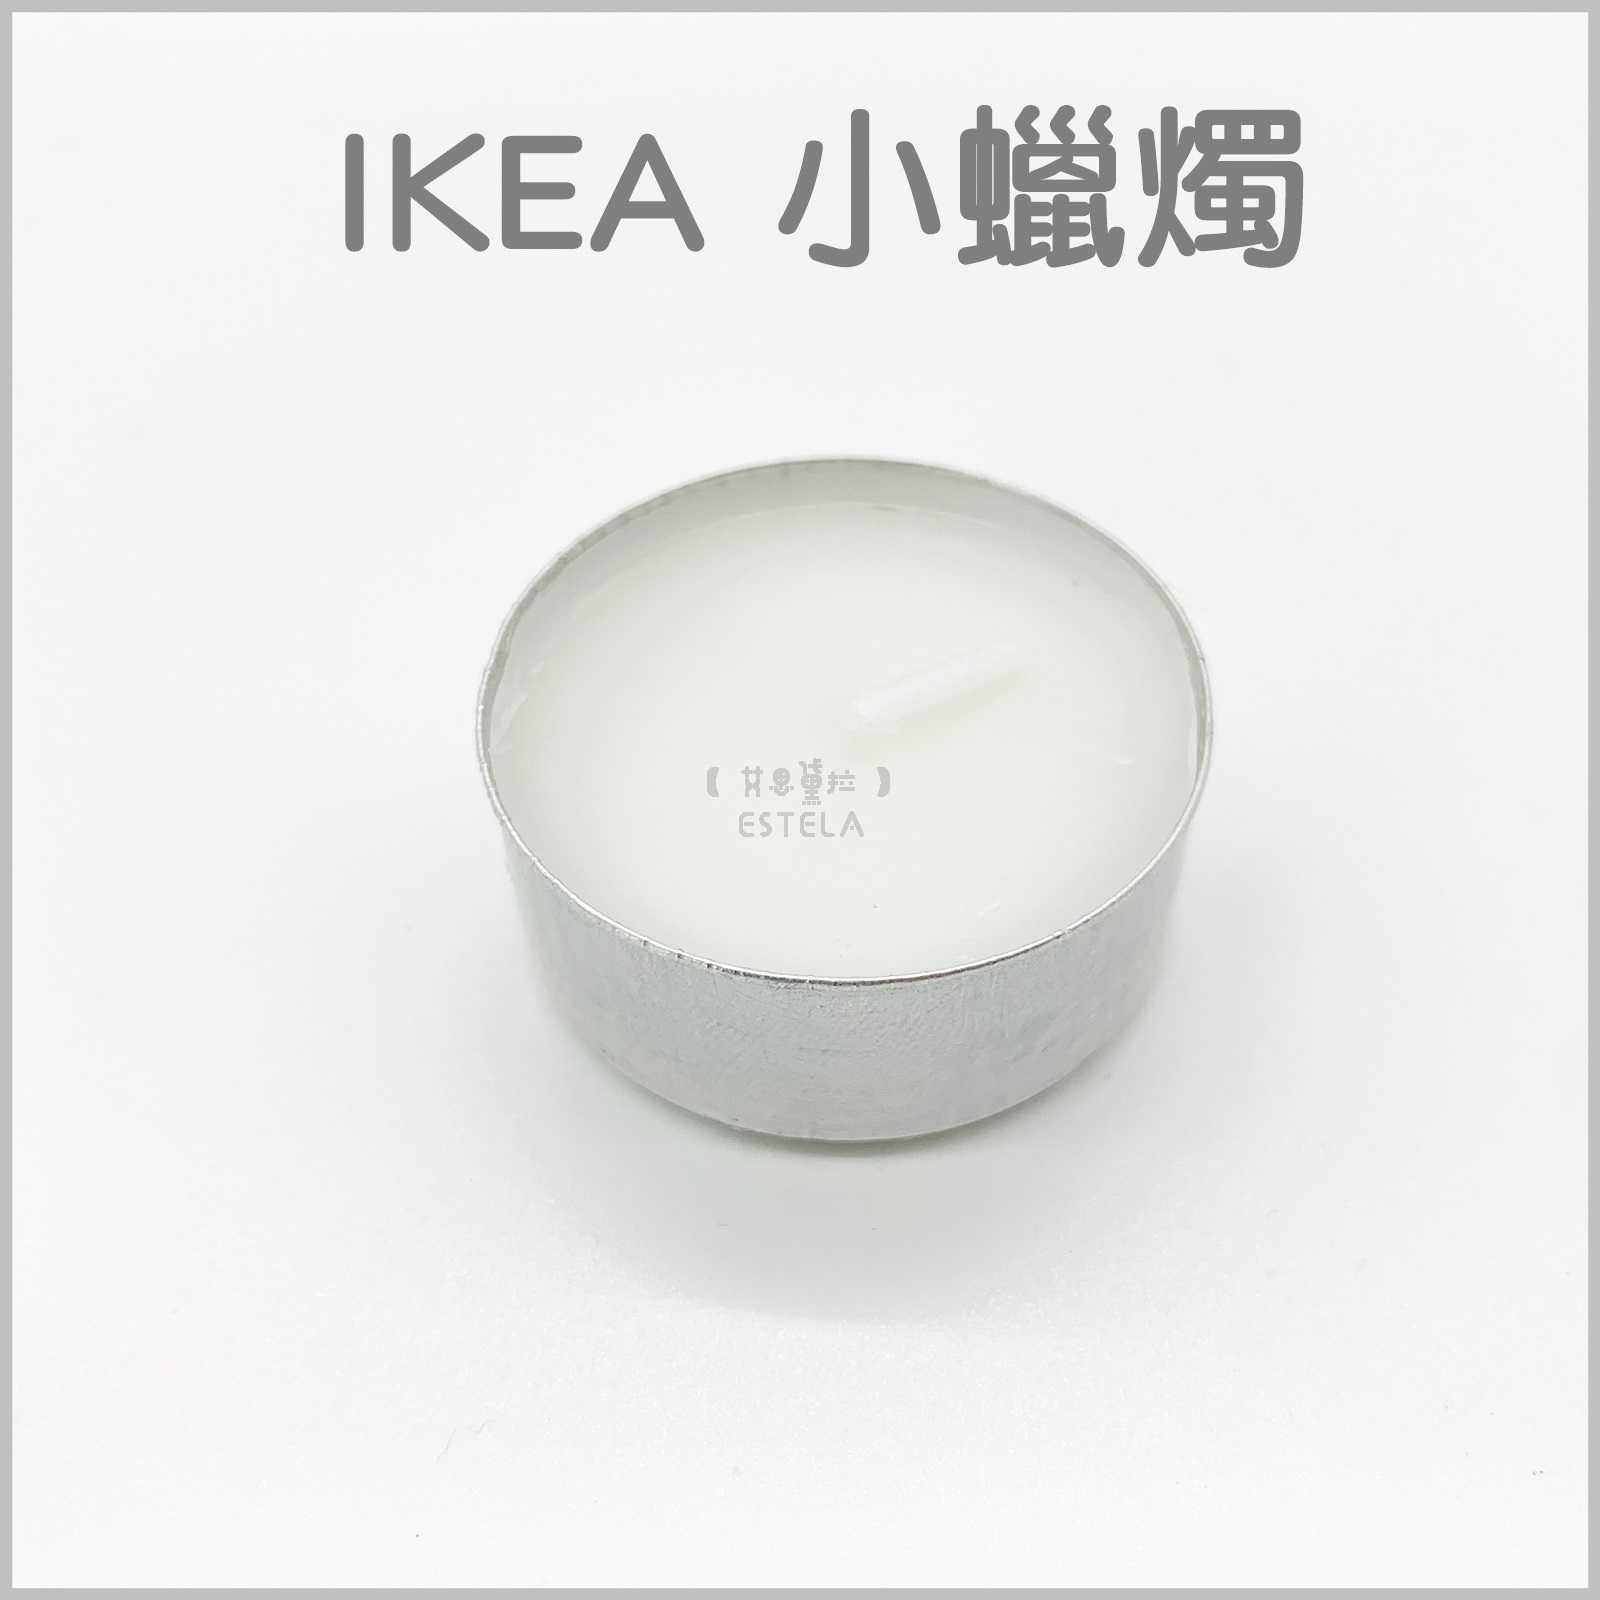 【艾思黛拉 A0125】現貨 IKEA 小蠟燭 全新 4小時 求婚 情人節 告白 婚禮 排字 浪漫 創意 防風 蠟燭